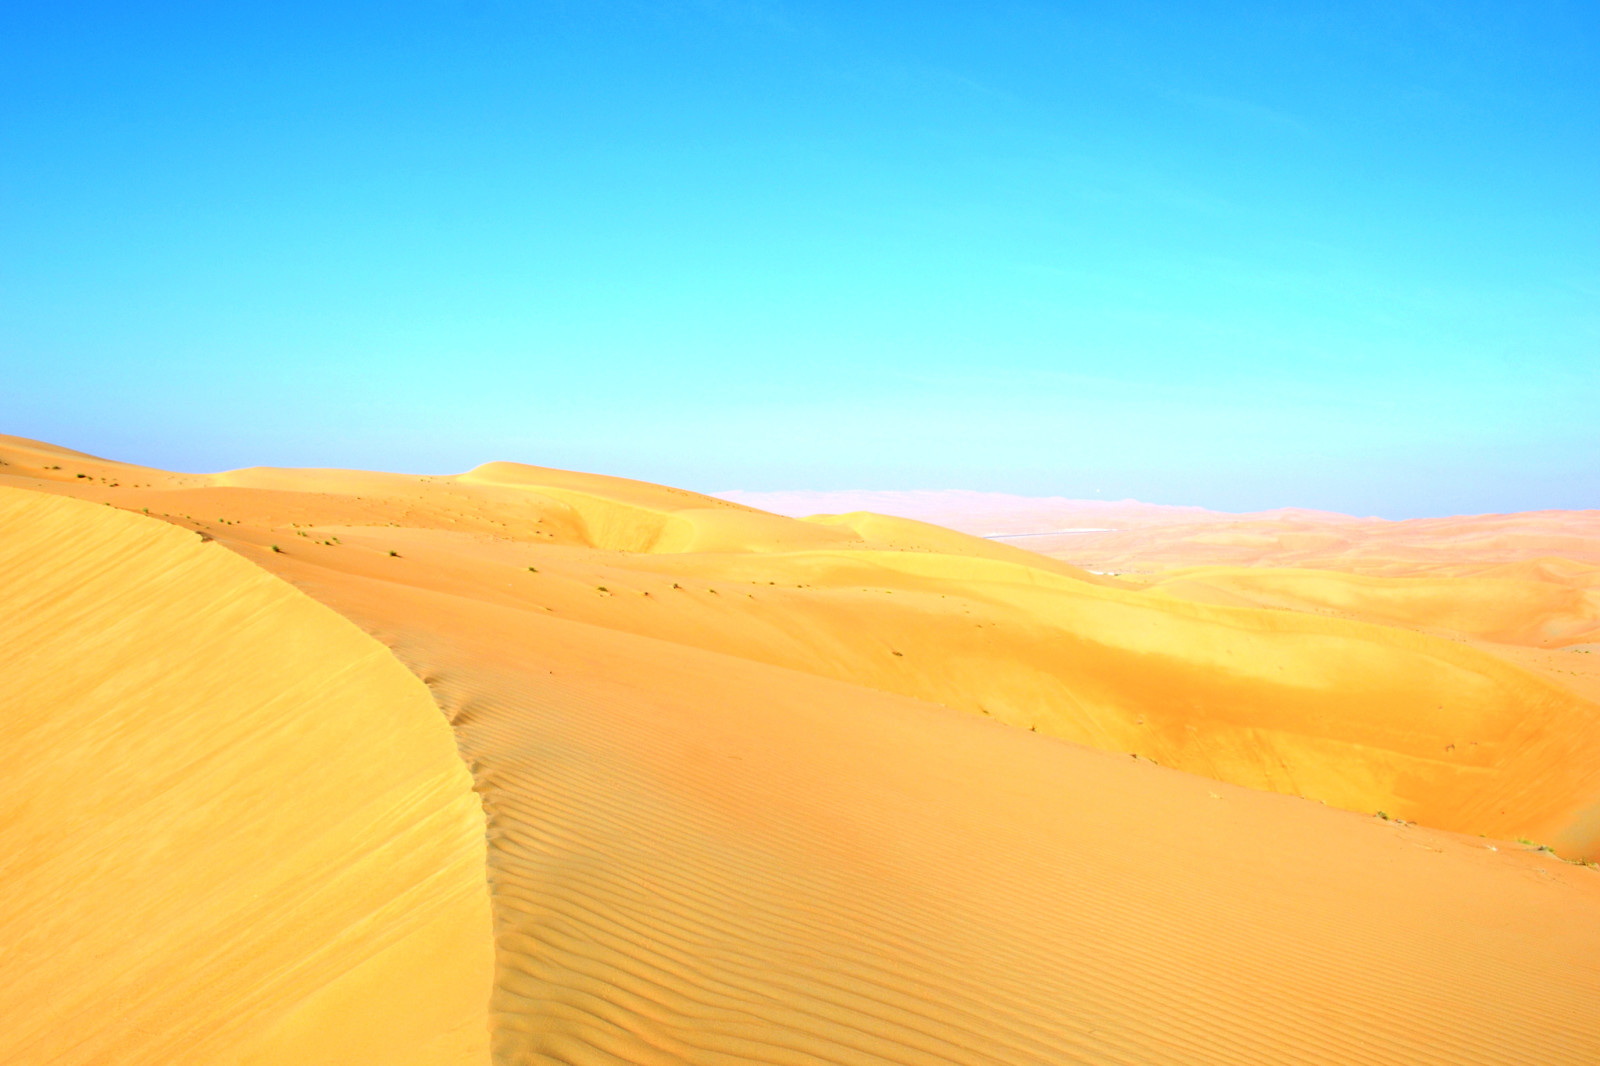 bầu trời, Sa mạc, cát, vỏ cây